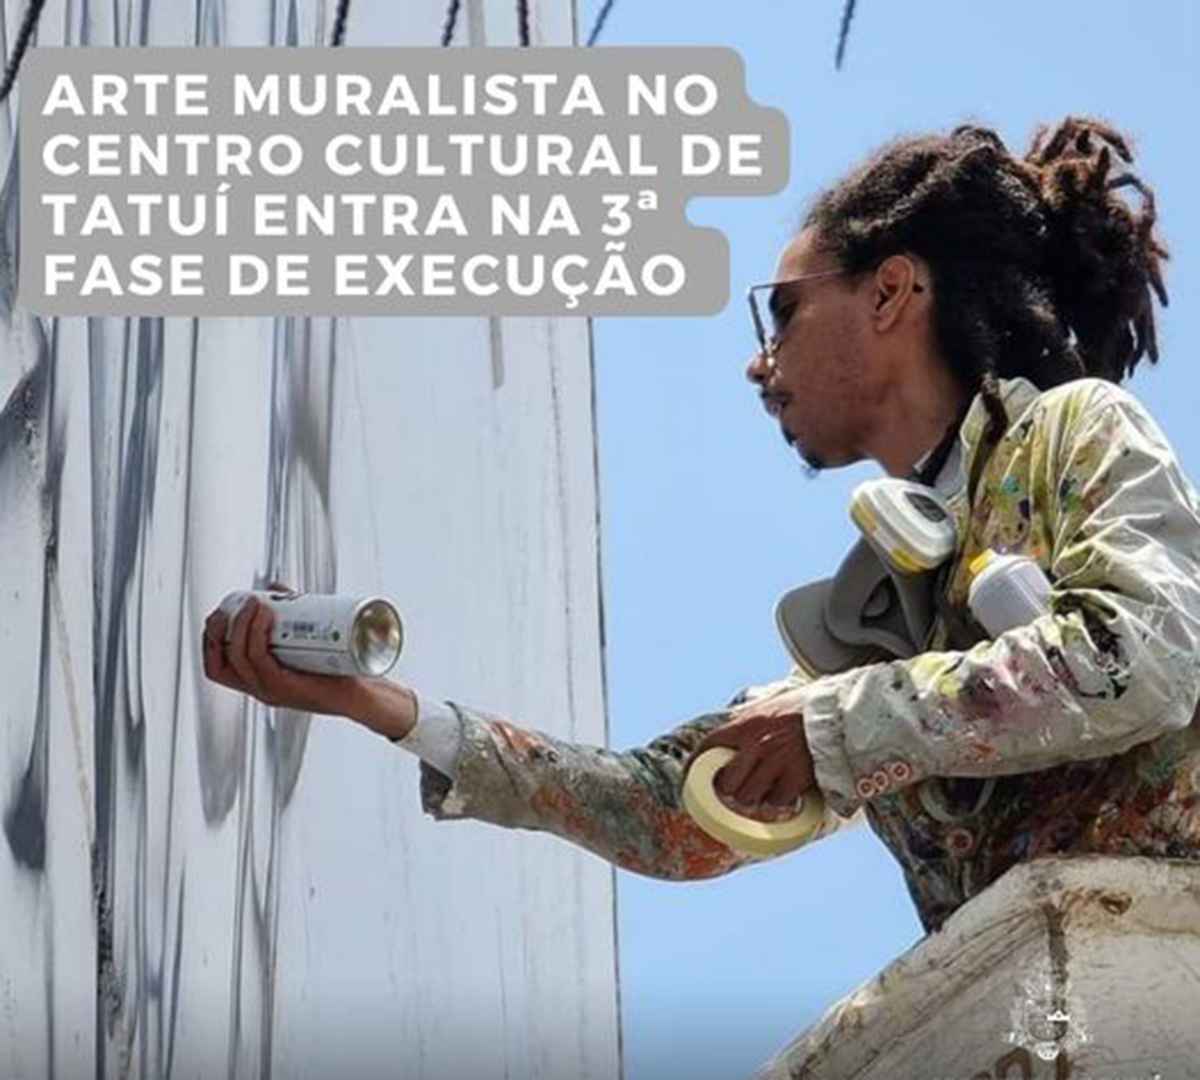 Arte muralista no Centro Cultural de Tatuí entra na 3ª fase de execução